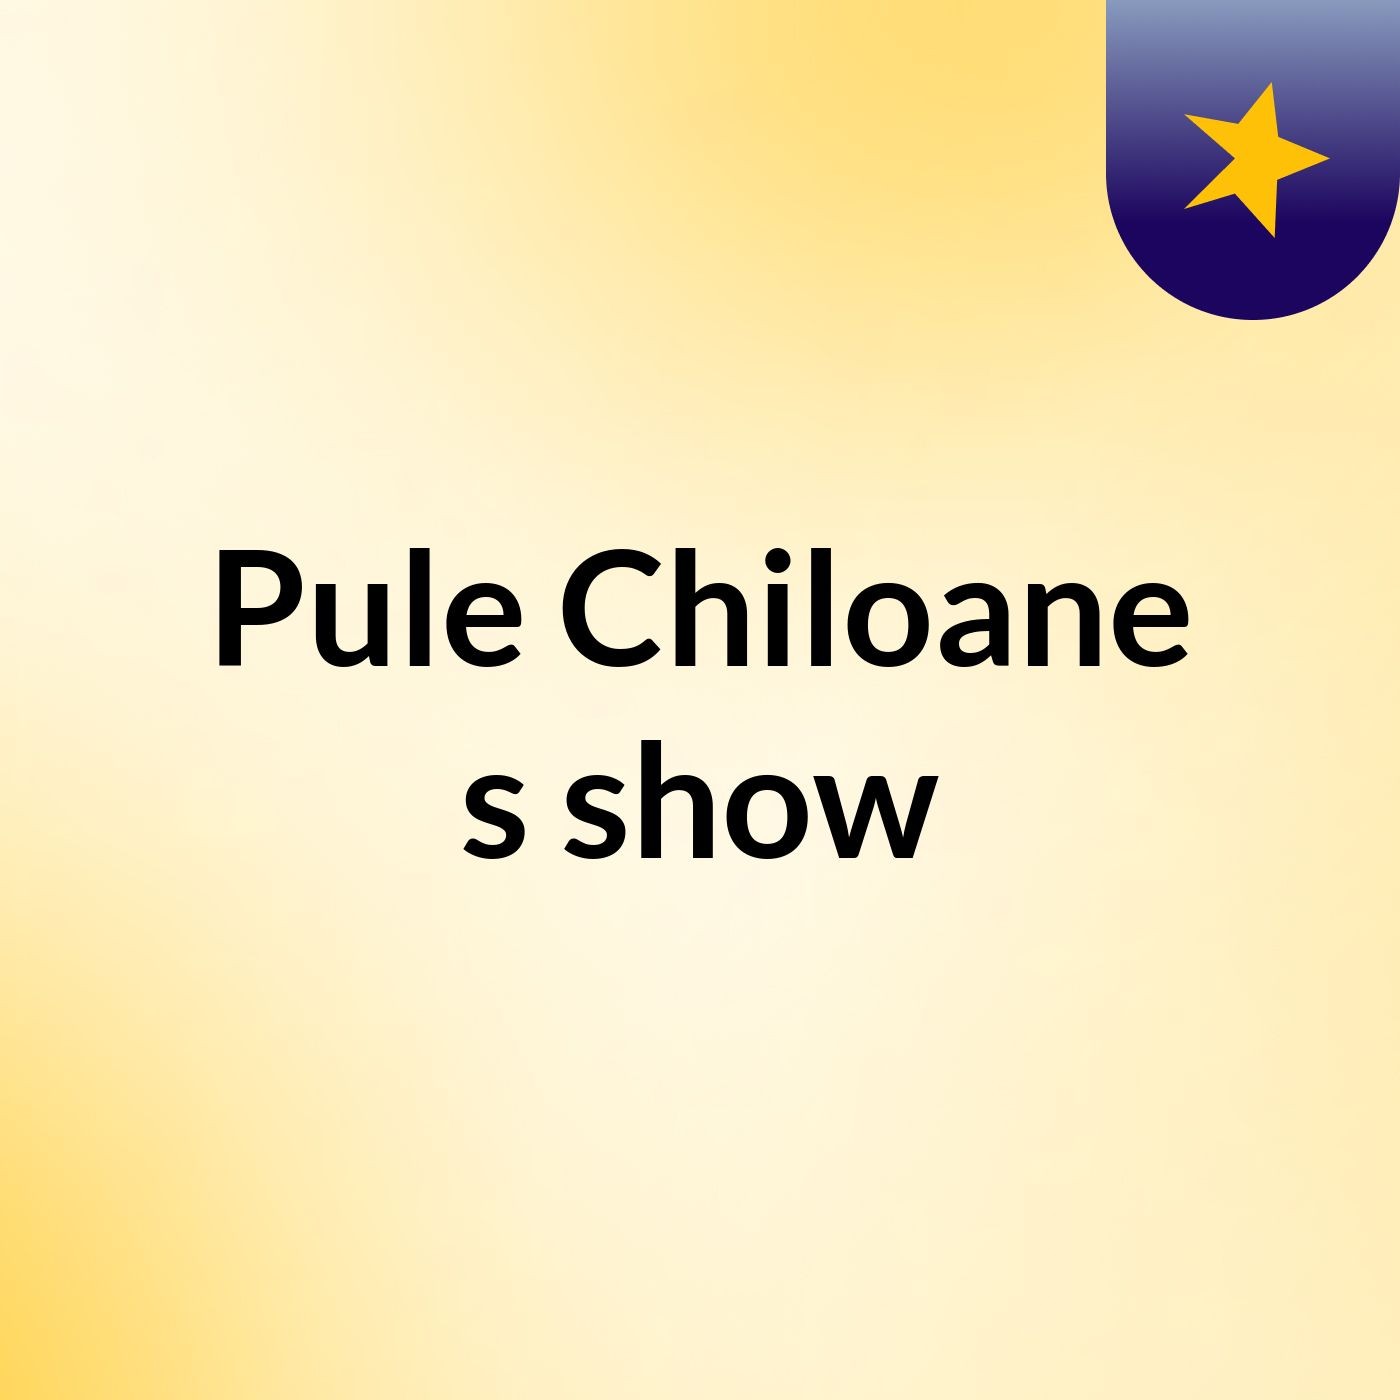 Pule Chiloane's show